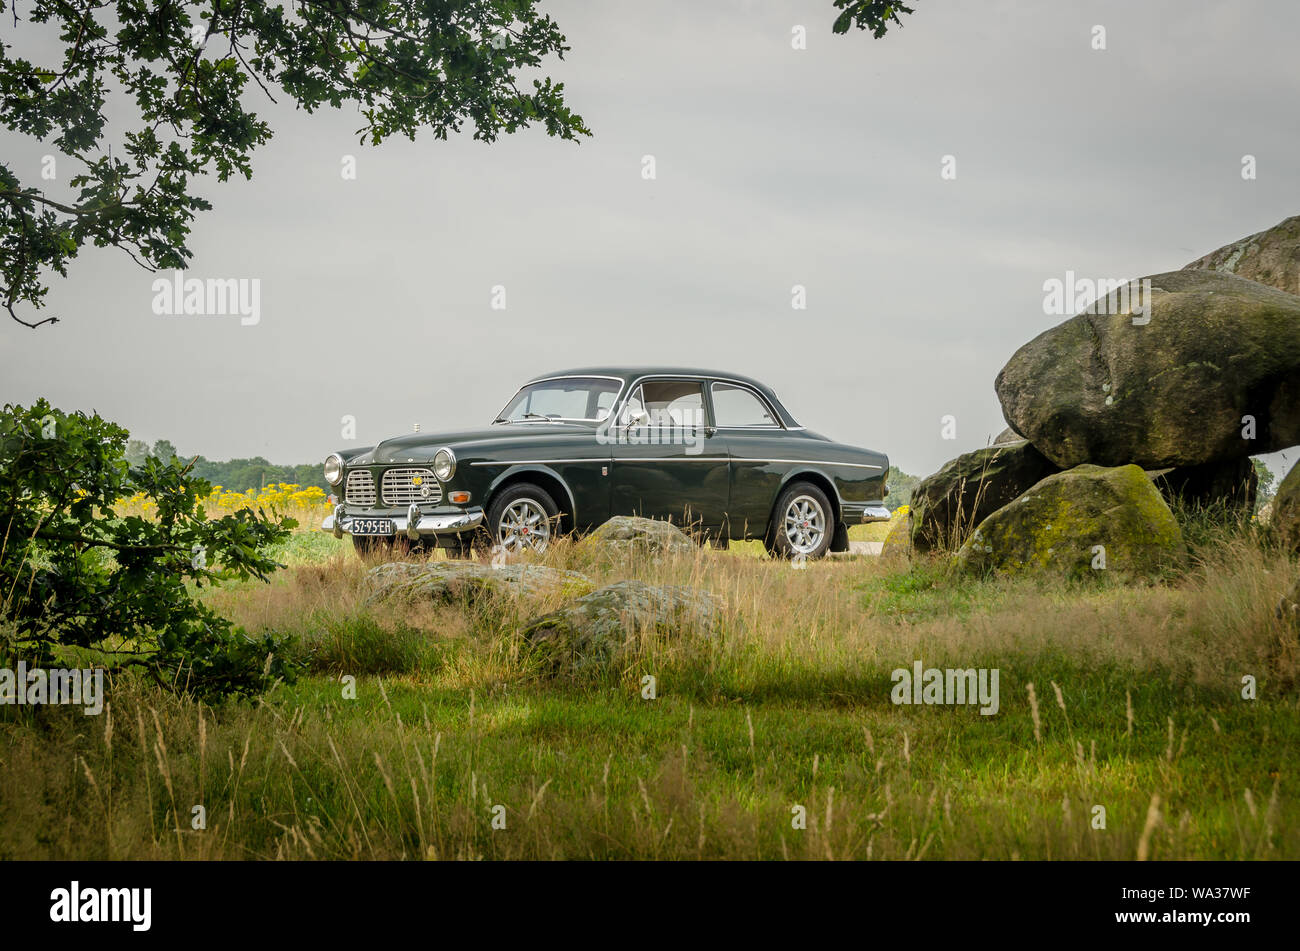 Volvo amazon -Fotos und -Bildmaterial in hoher Auflösung - Seite 2 - Alamy